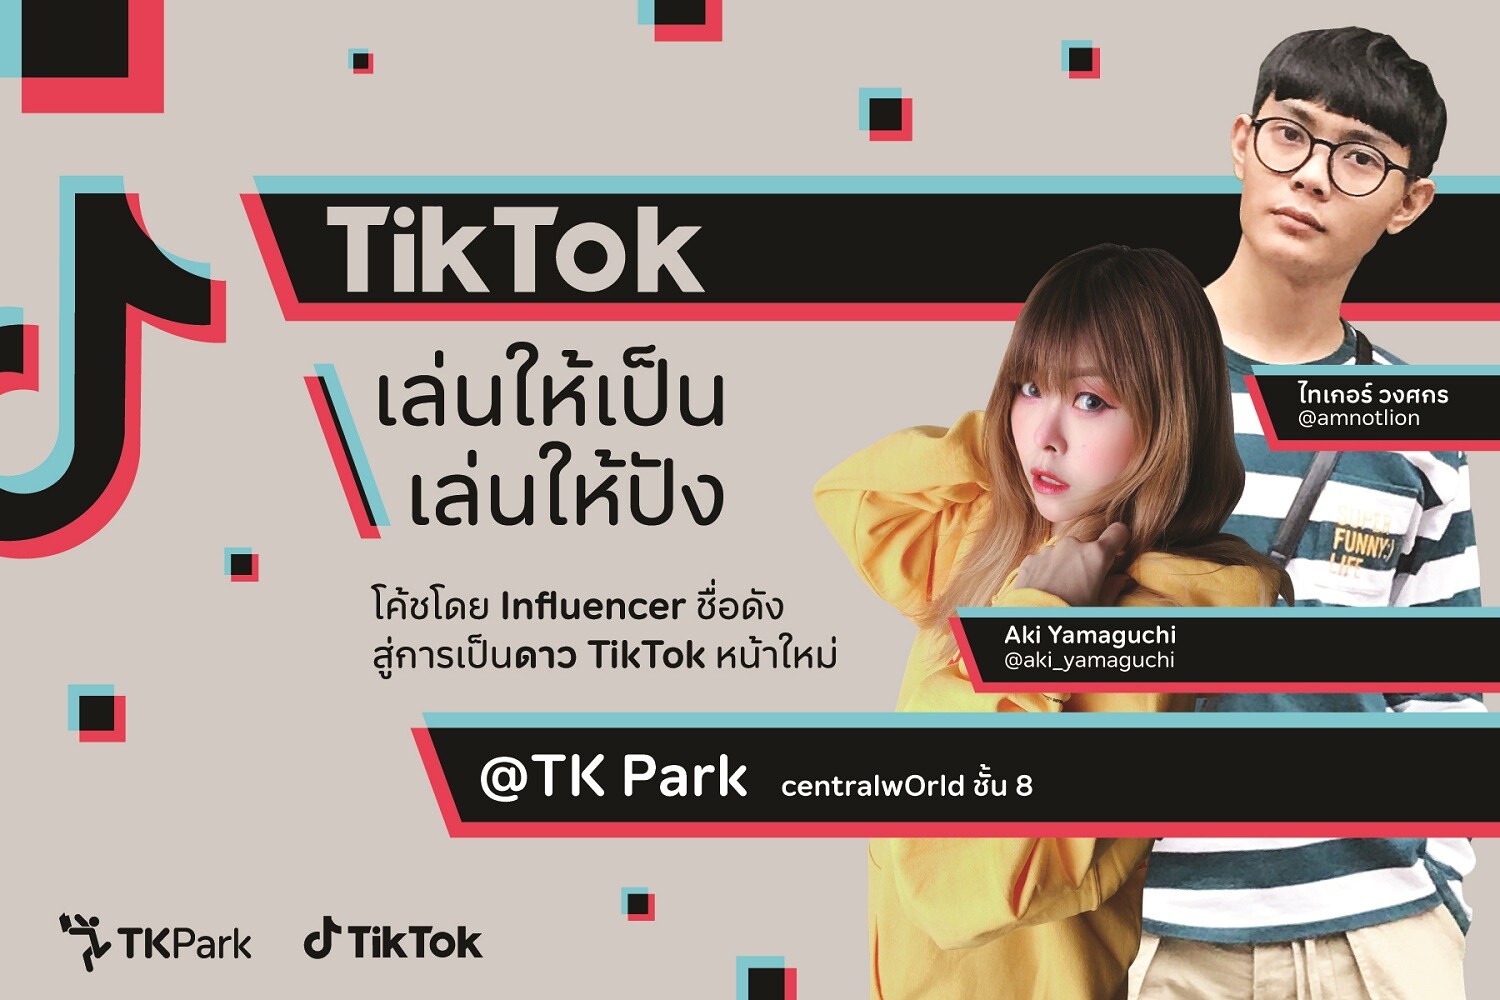 ทีเคพาร์ค จับมือ TikTok Thailand ชวนเข้าร่วมอบรม สู่การเป็นดาว TikTok หน้าใหม่ กับกิจกรรม "TikTok เล่นให้เป็น เล่นให้ปัง"